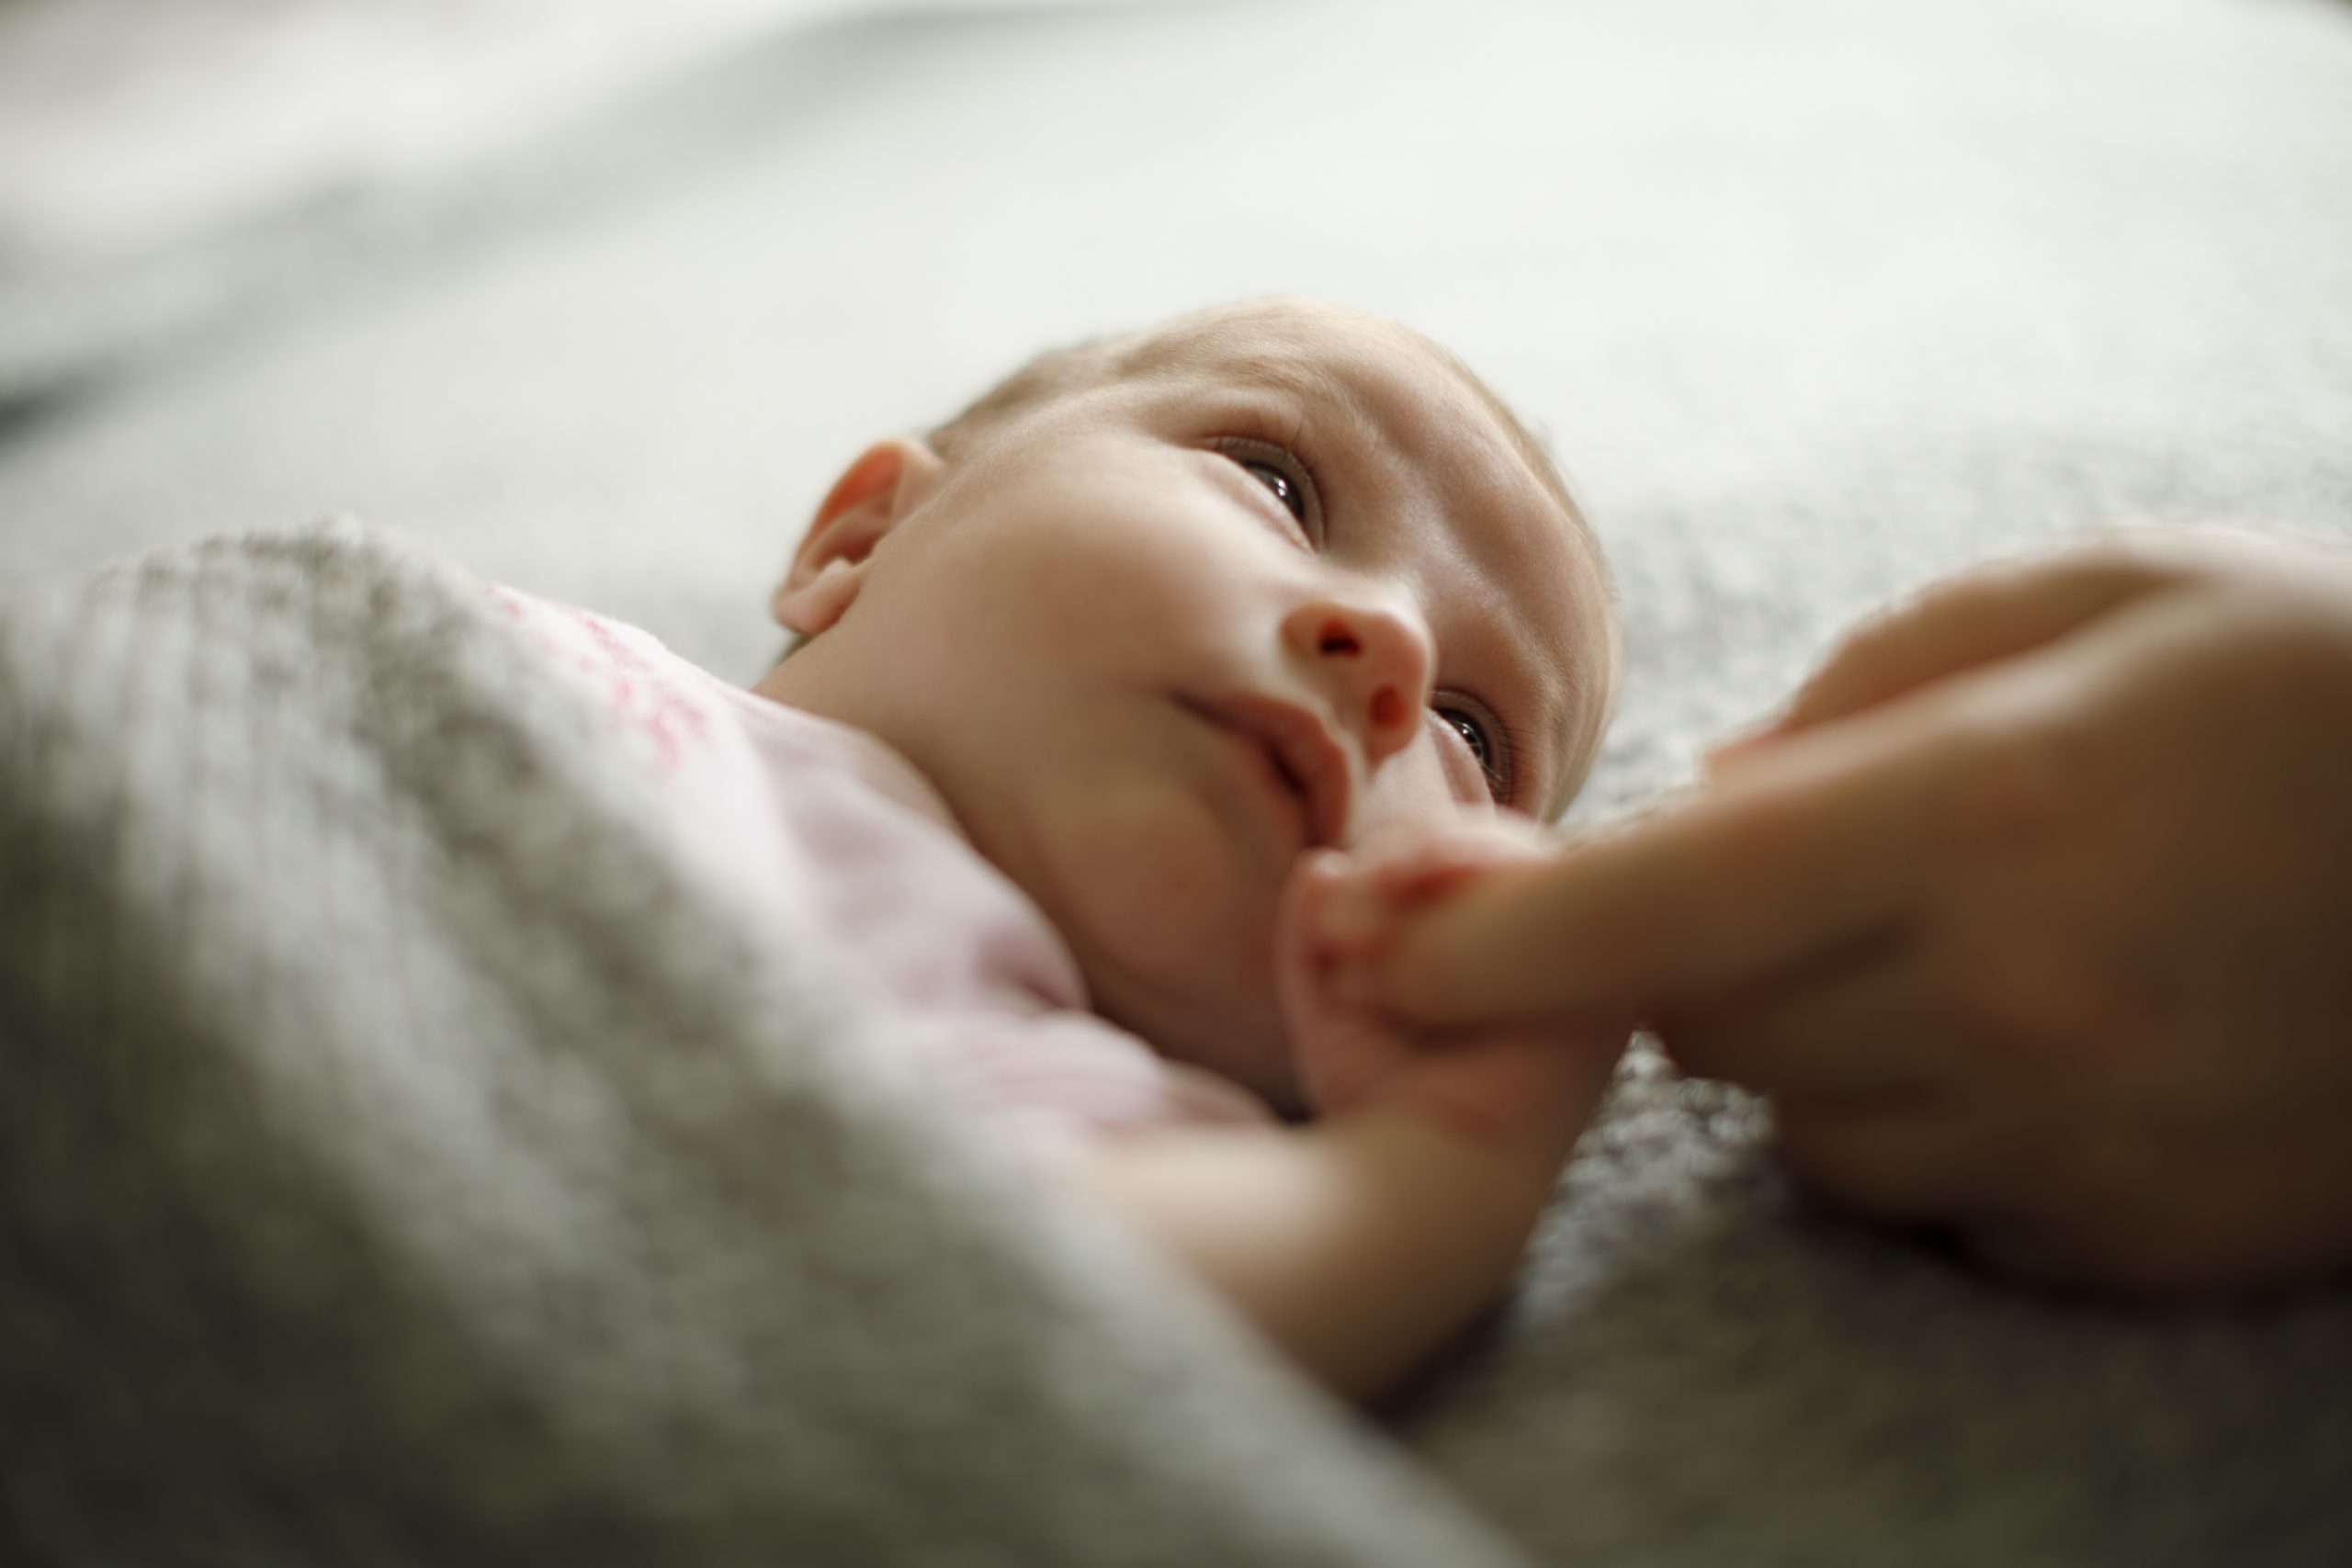 Μια παρένθετη μητέρα εξομολογείται: “πώς ένιωσα όταν έδωσα το παιδί που γέννησα”